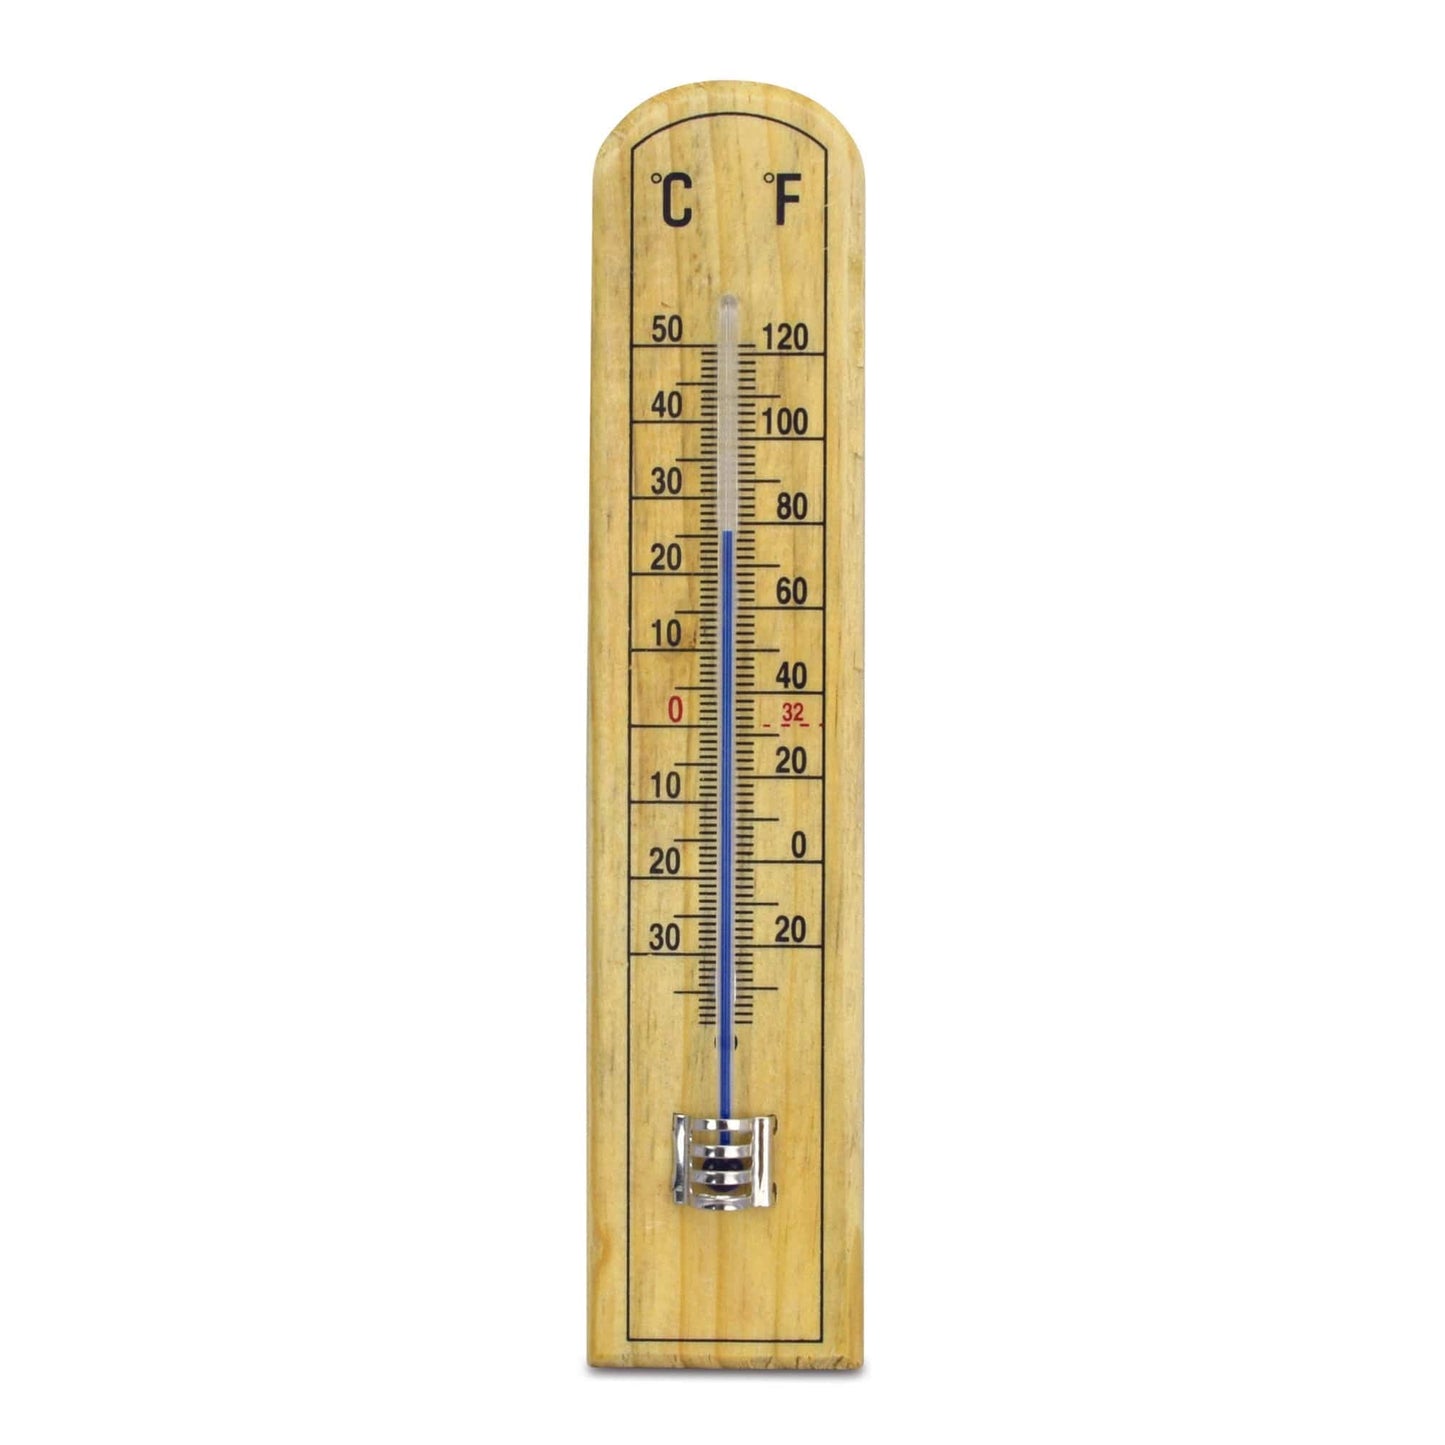 Un Thermomètre en hêtre - 45 x 205 mm par Thermometre.fr sur fond blanc.